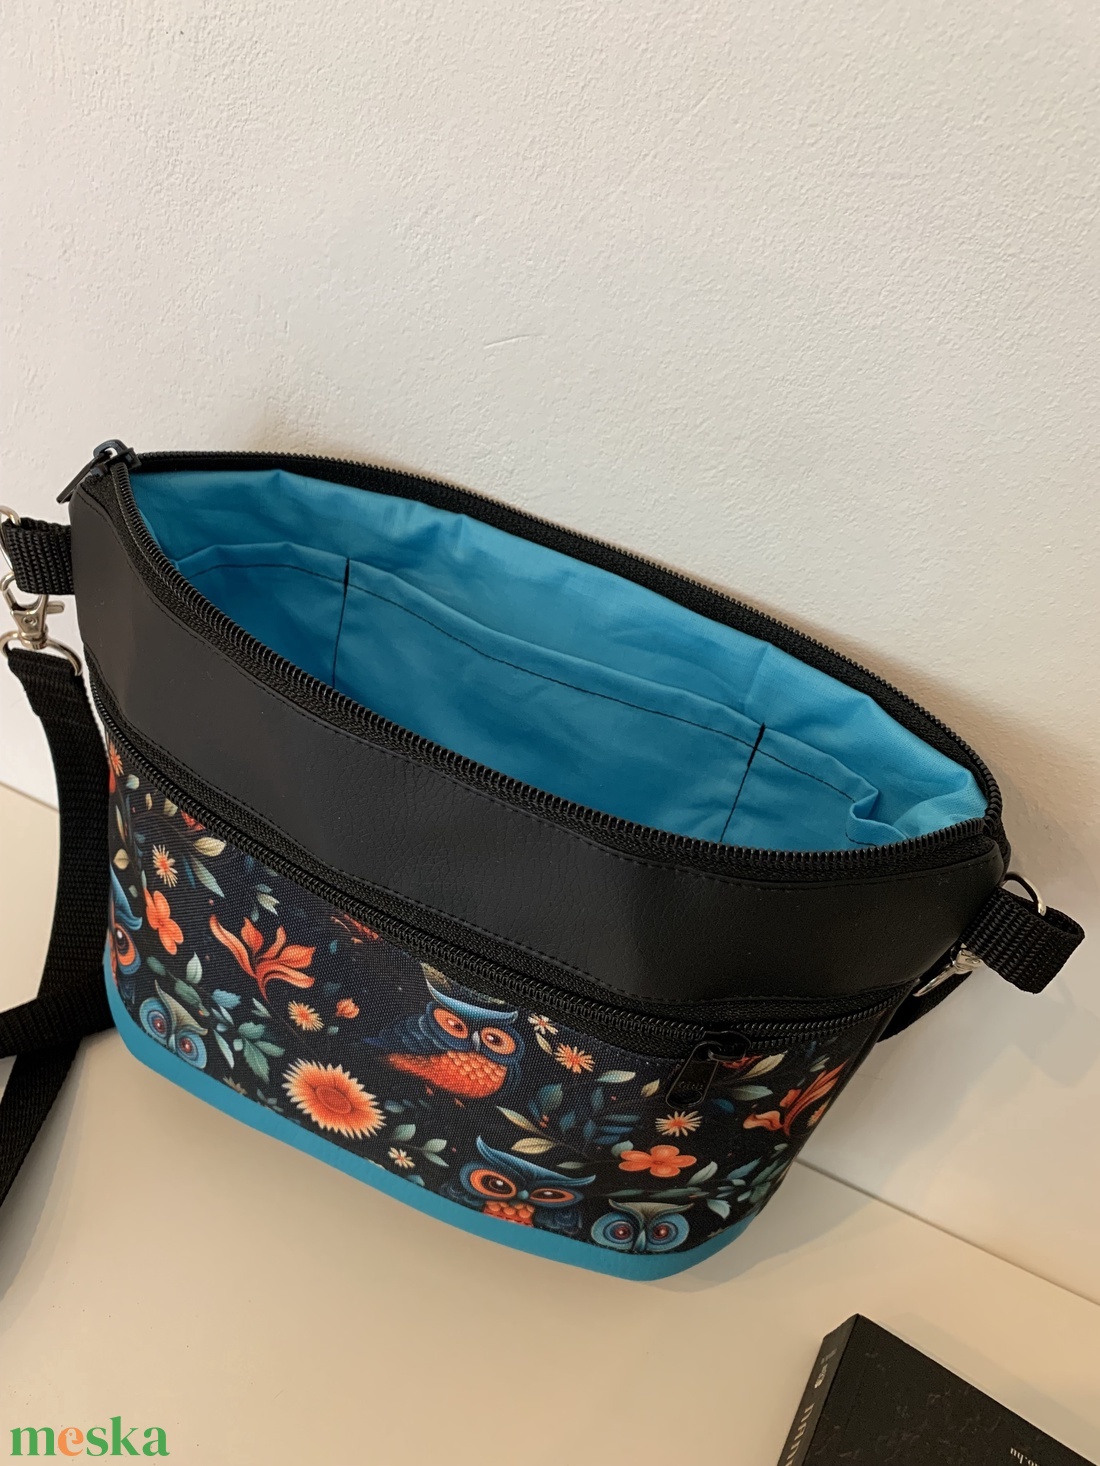 Baglyos vállon átvethető táska, oldaltáska, válltáska - táska & tok - kézitáska & válltáska - vállon átvethető táska - Meska.hu